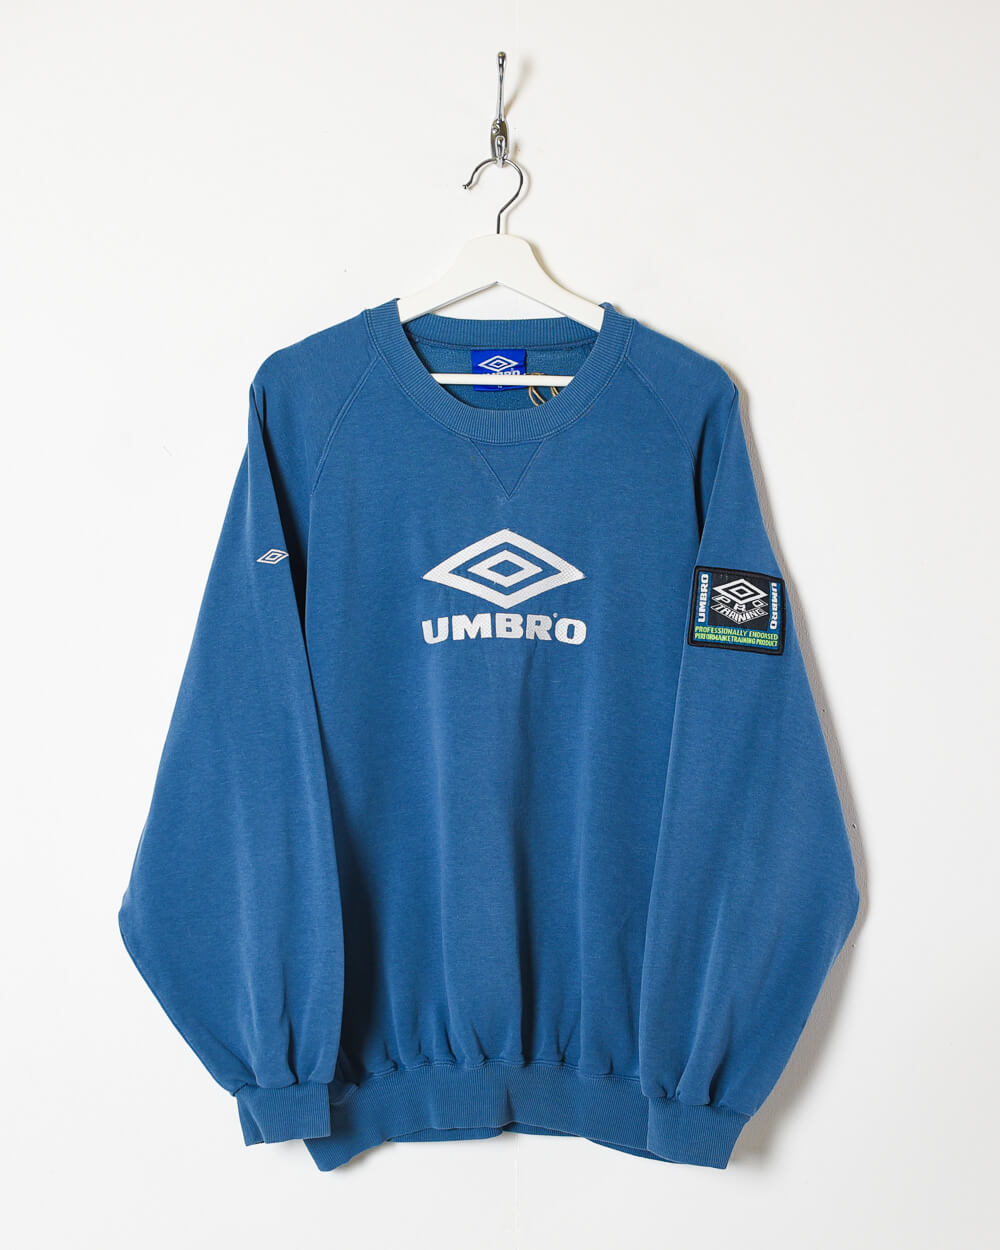 Vintage 90s Blue Umbro Pro Training Sweatshirt - Large Cotton mix 